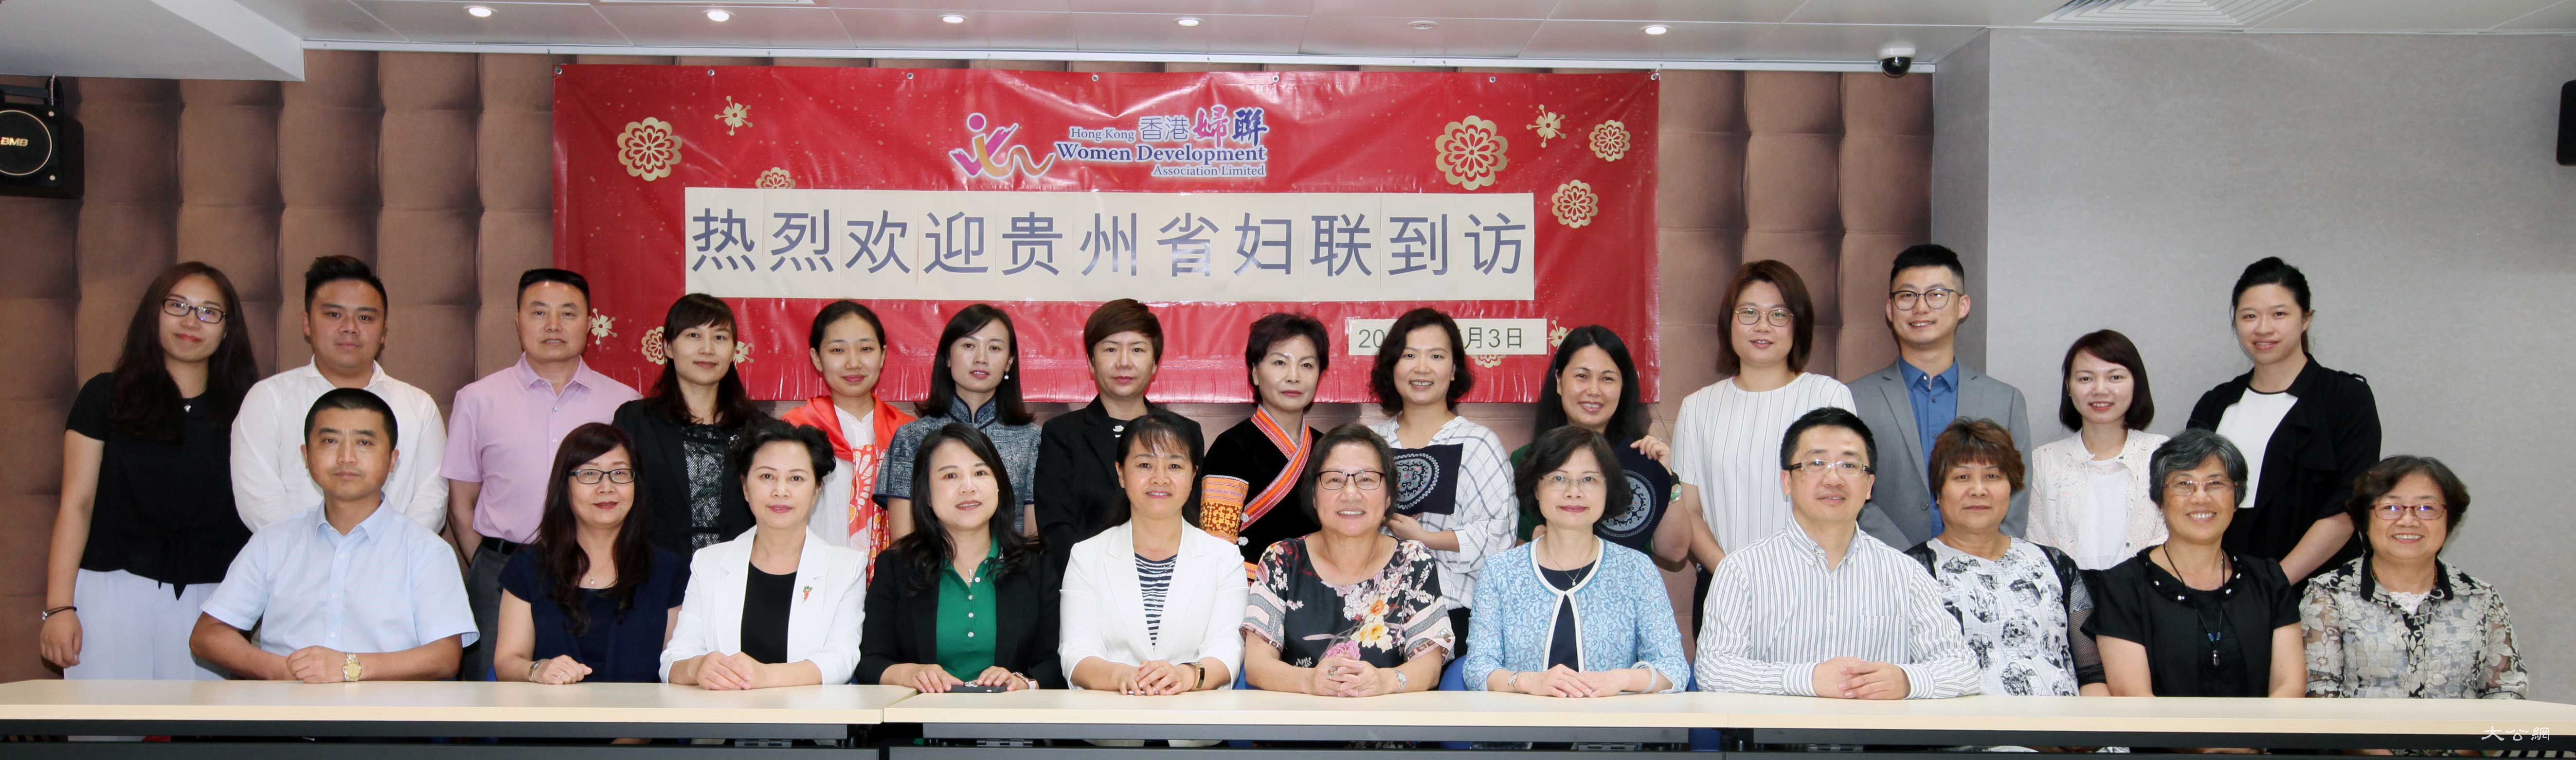 香港妇联接待贵州省妇联考察团一行